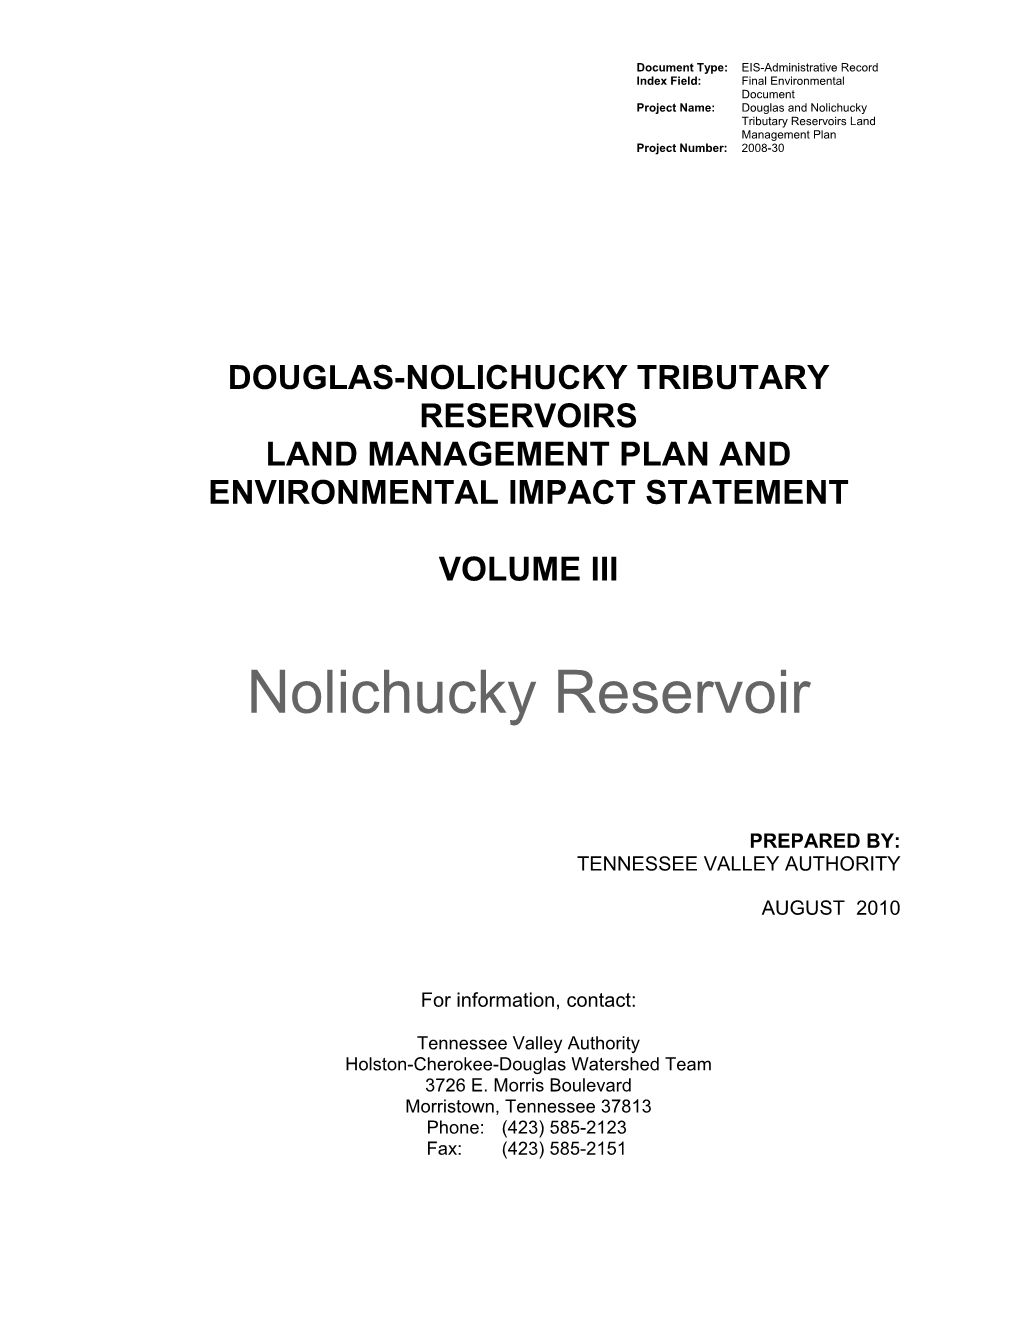 Nolichucky Reservoir Land Management Plan